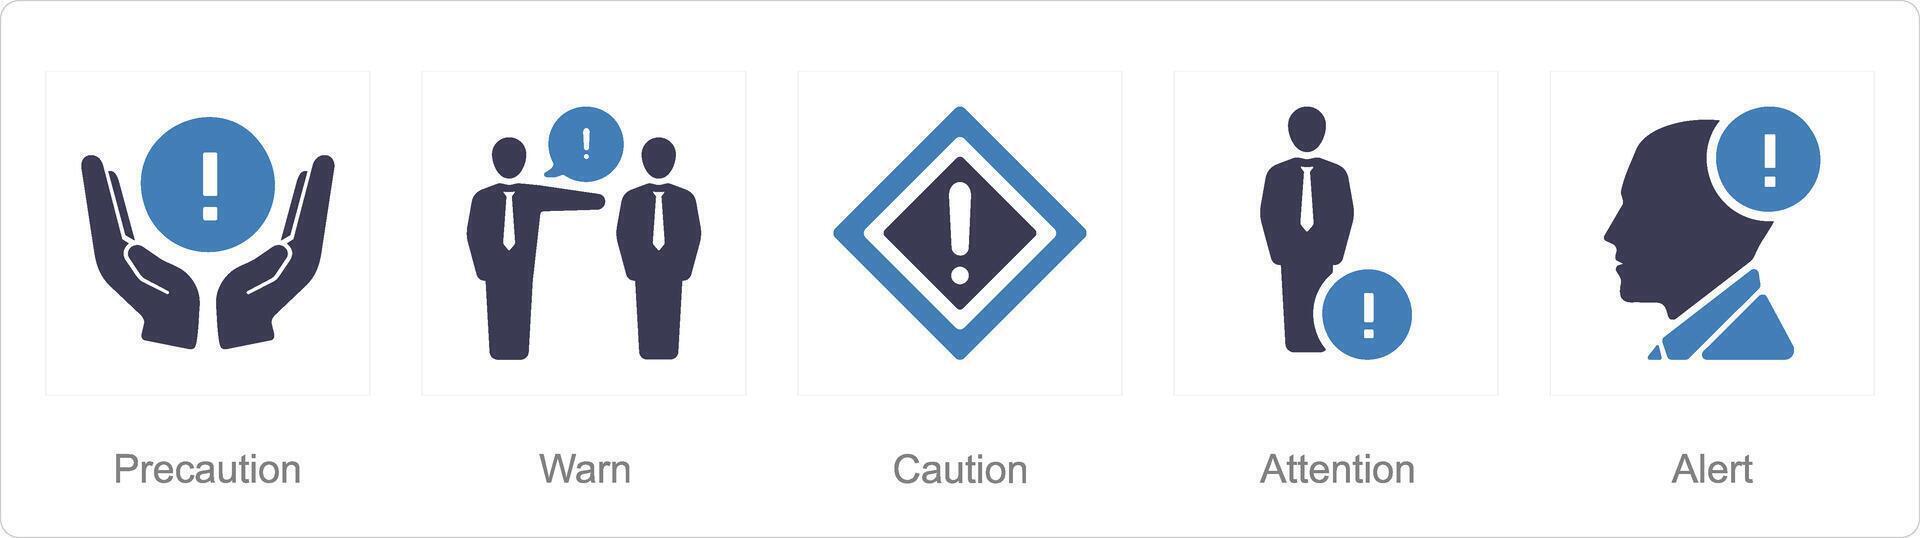 un conjunto de 5 5 peligro peligro íconos como precaución, advertir, precaución vector